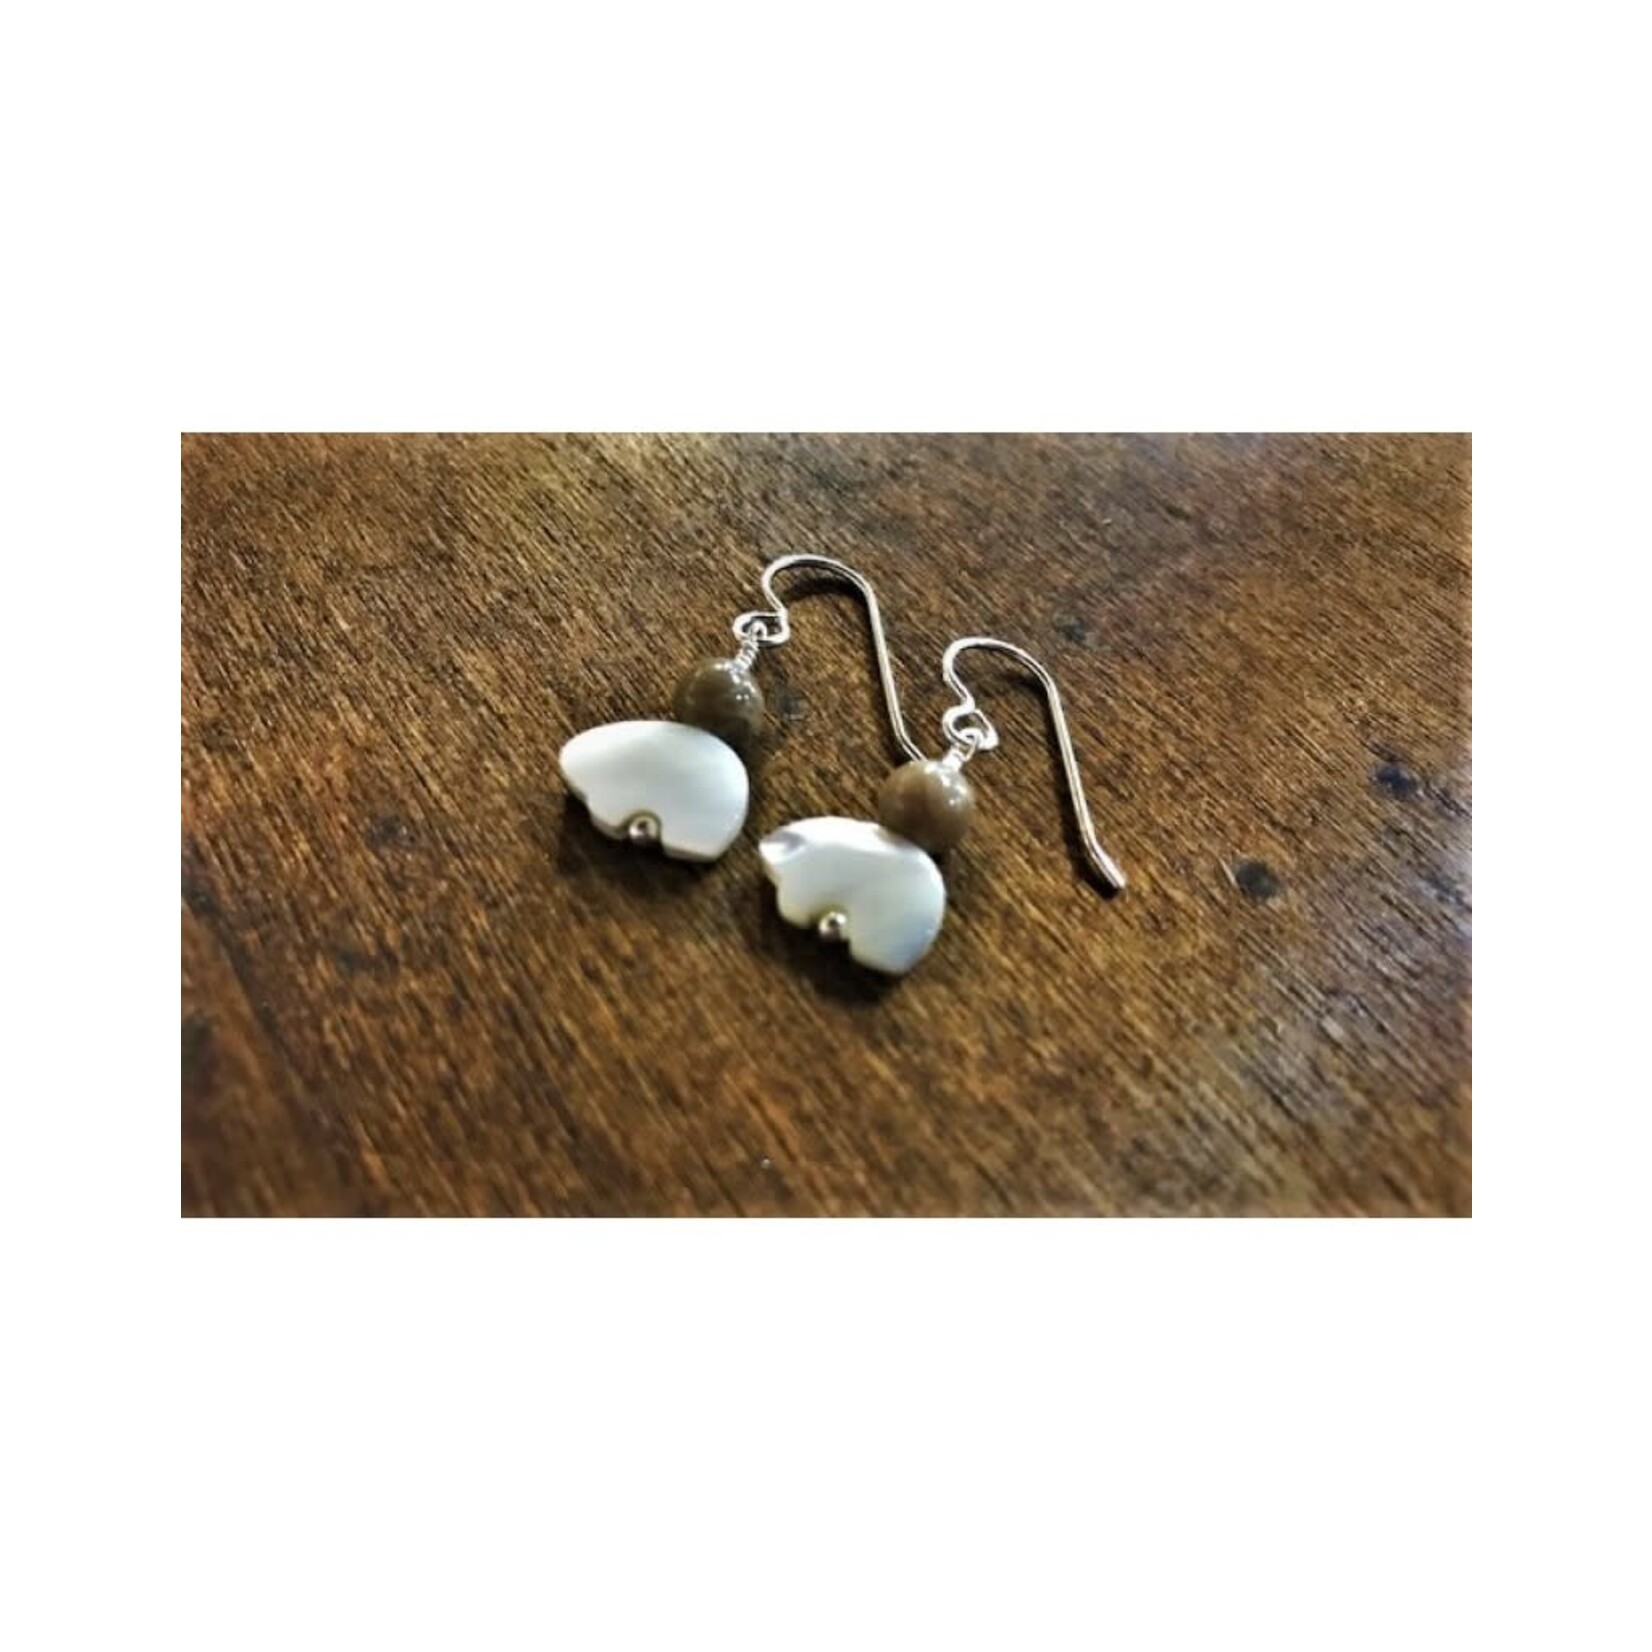 French Hook Earrings - Petoskey & Pearl Bear